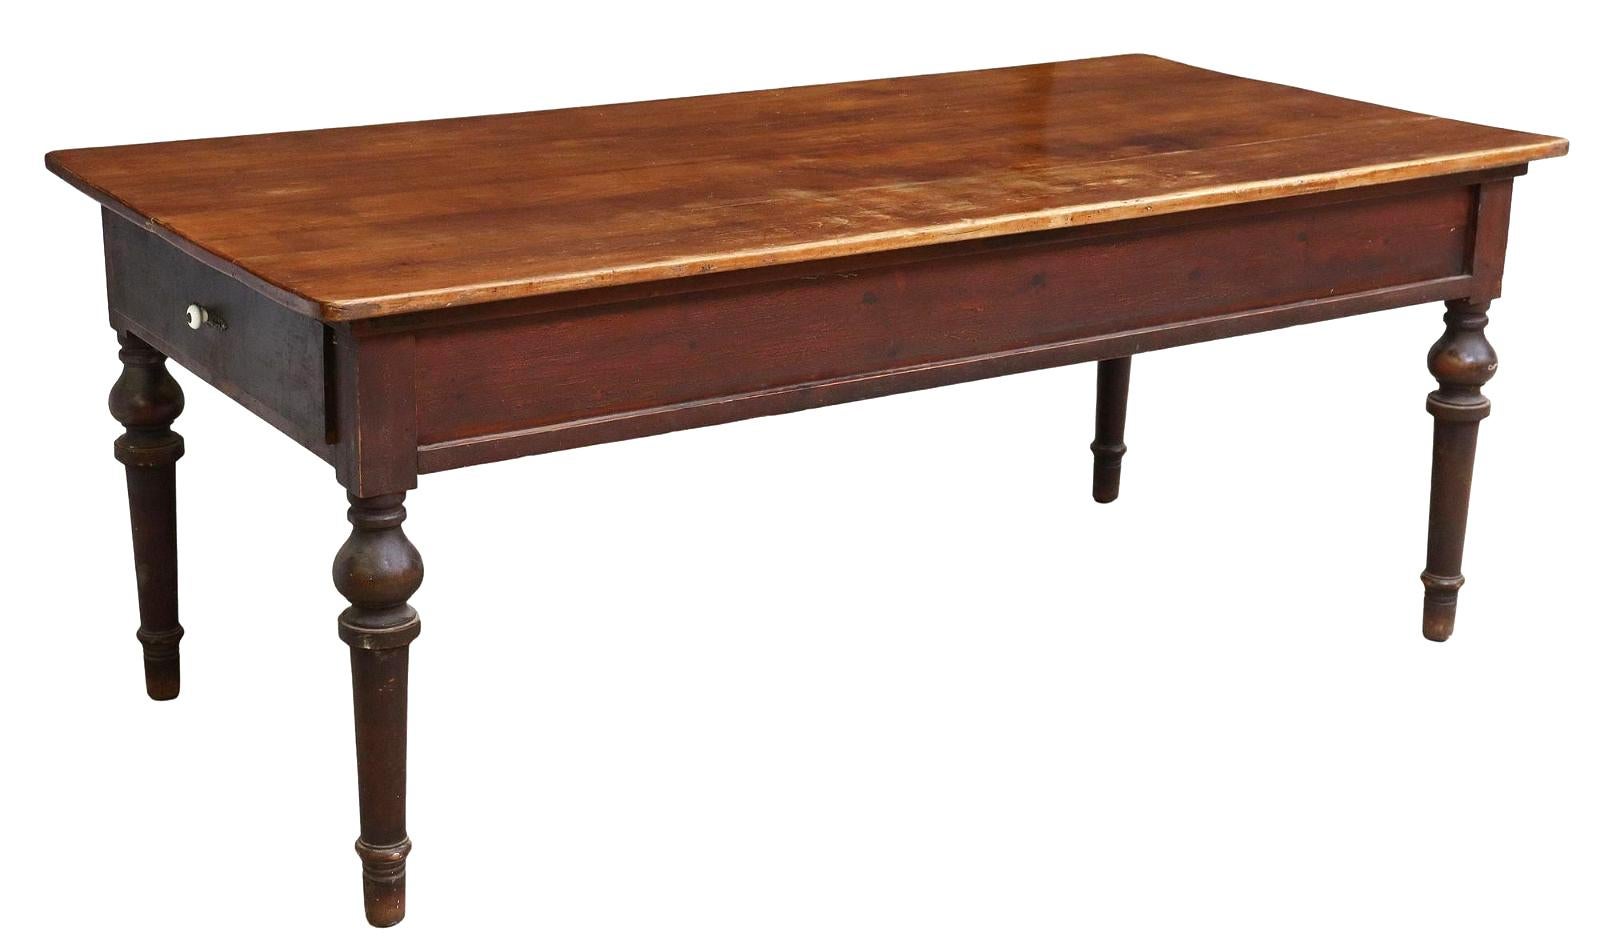 Antiker rustikaler Bauernhaustisch / Esstisch, Spanien, 19.Jh. Dieser Tisch hat eine rechteckige Bohlenplatte, zwei seitliche Schubladen und steht auf gedrechselten Beinen. Die Schublade hat einen weißen Porzellanknauf.

Abmessungen
ca. 31 7/8 